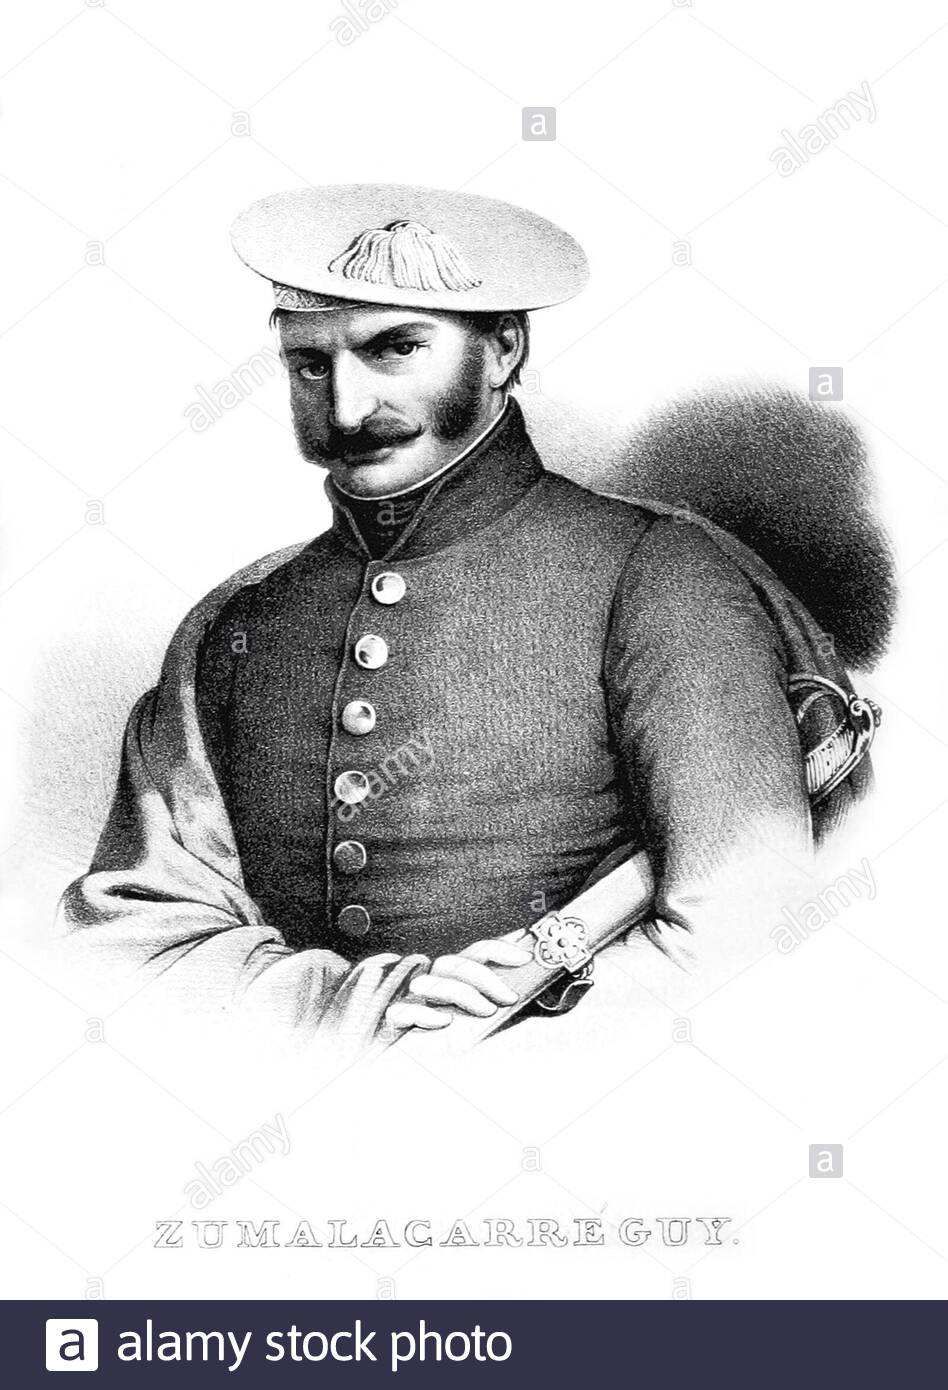 Tomás de Zumalacárregui e Imaz Portrait, 1788 – 1835, war ein spanischer baskischer Offizier, der während des ersten Carlistenkrieges als Hauptmann der Armee die Carlistenfraktion anführte, Vintage Illustration von 1835 Stockfoto